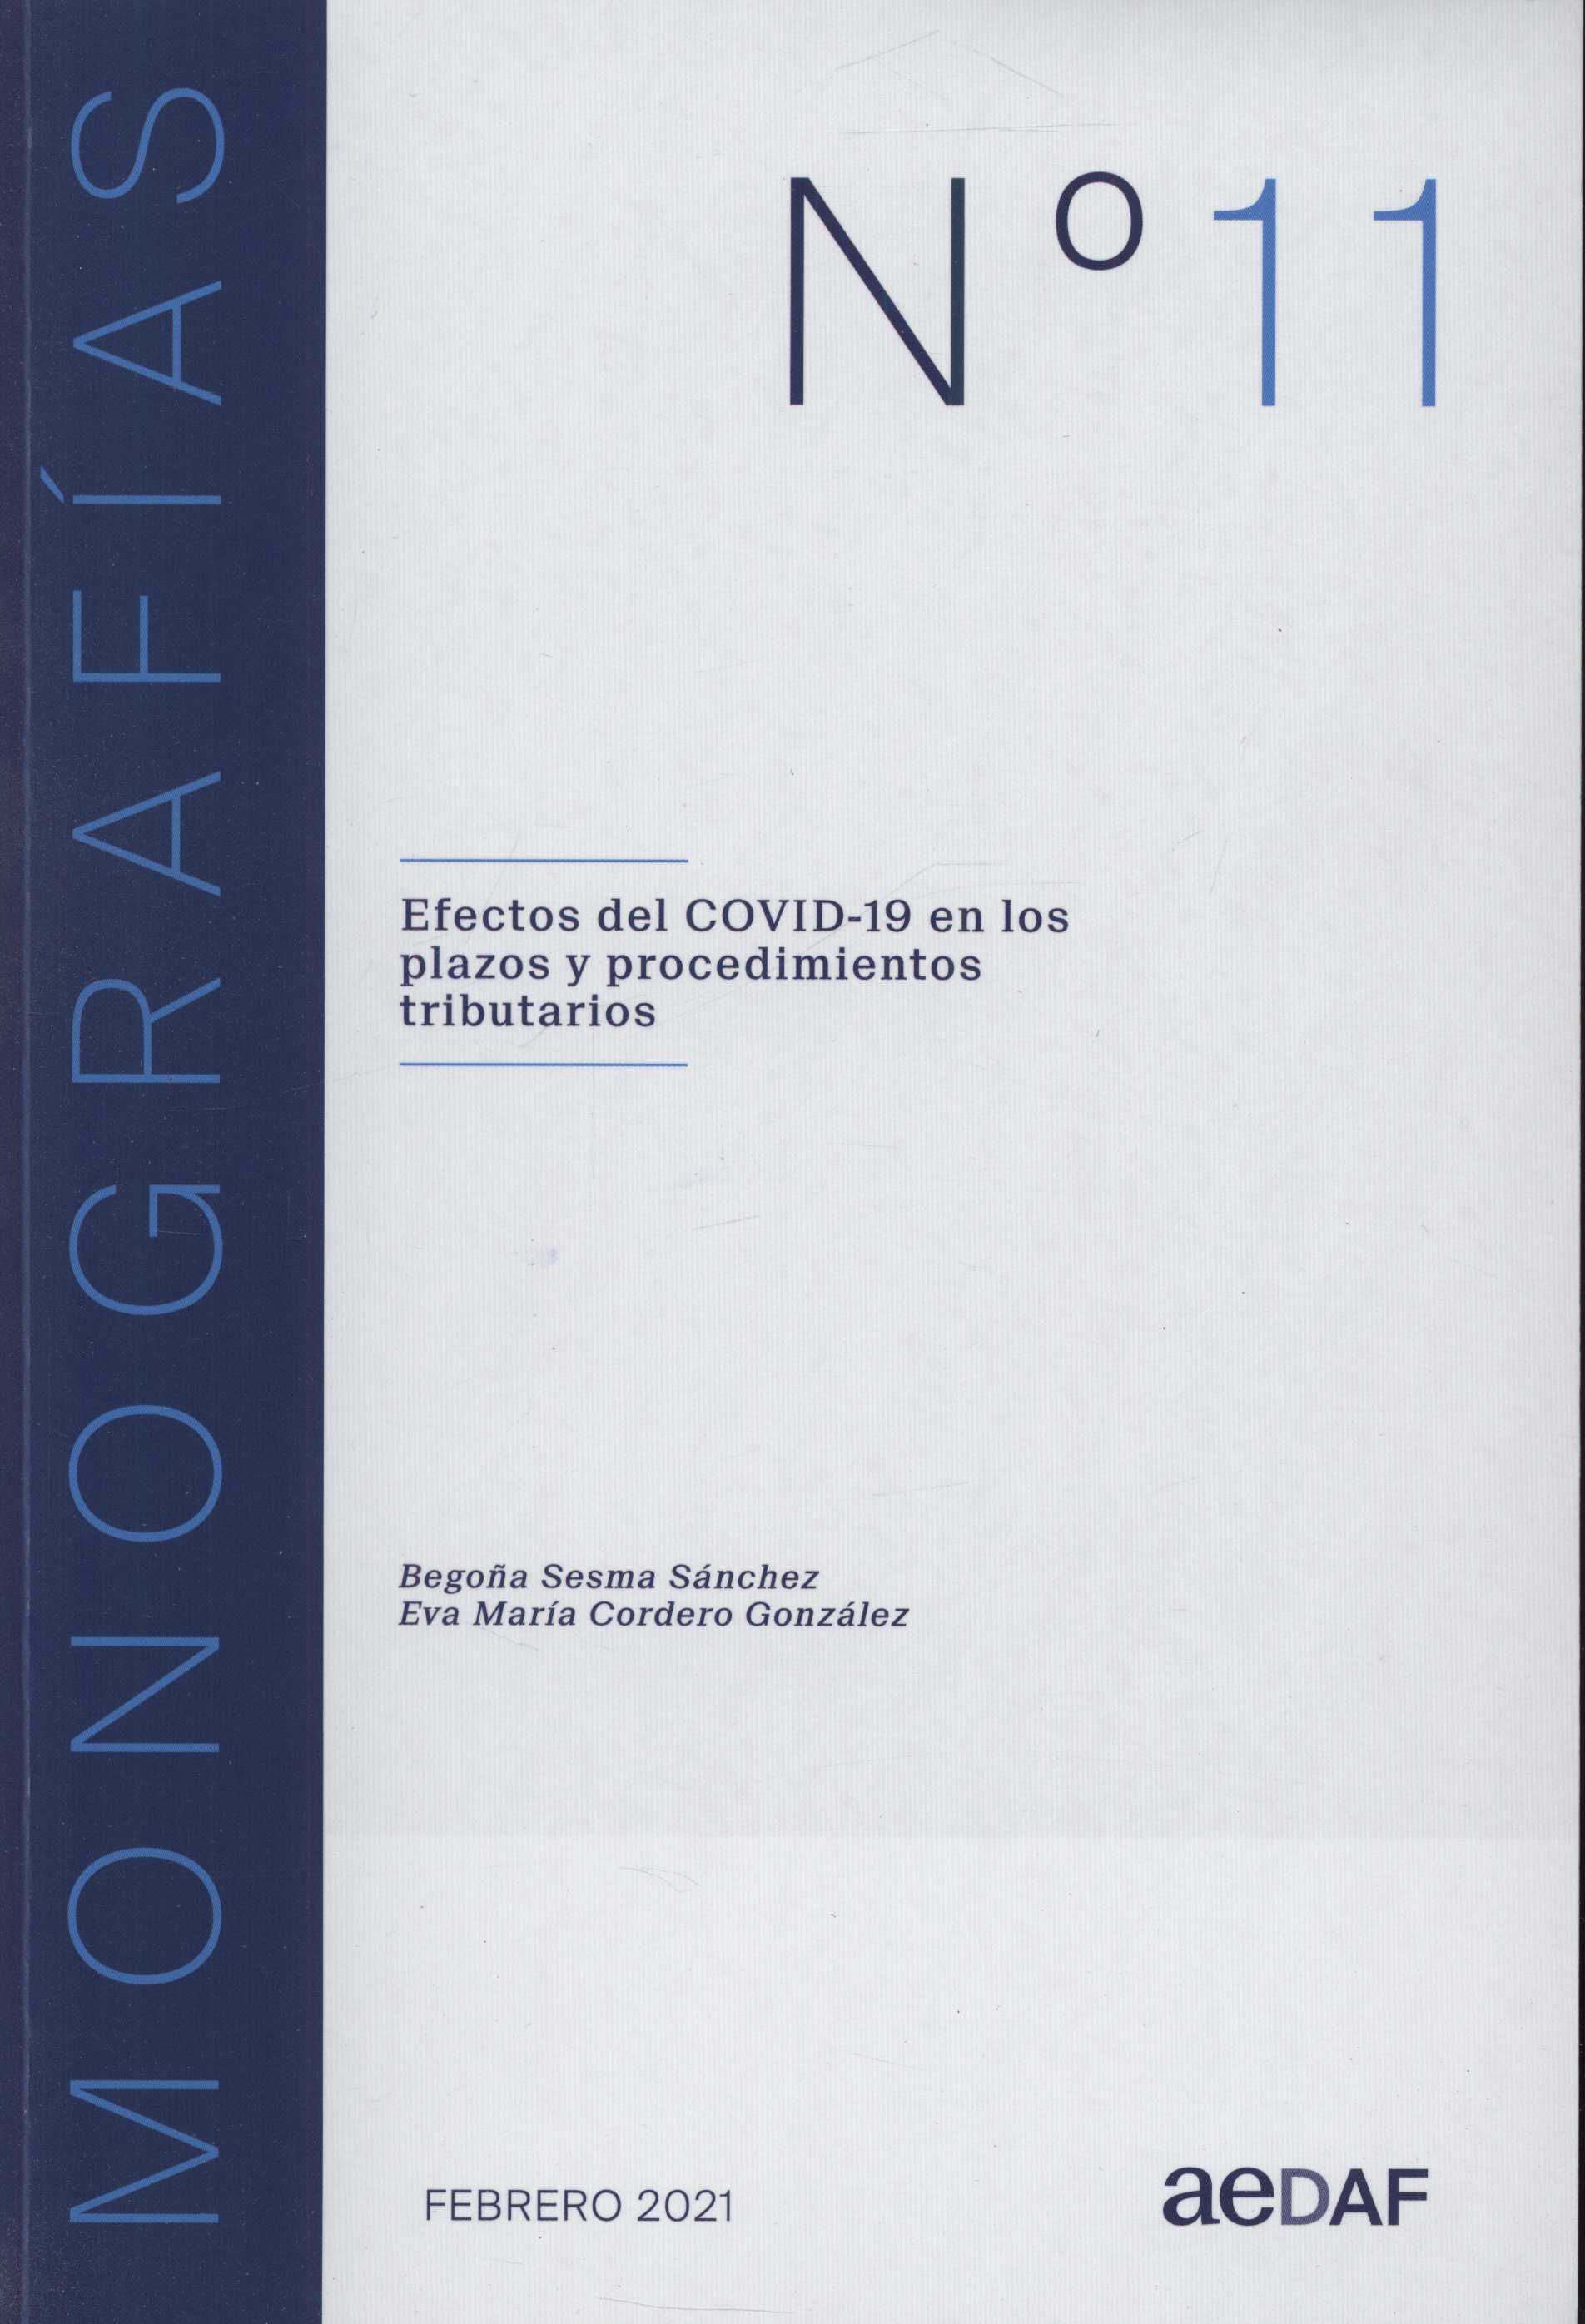 Imagen de portada del libro Efectos del COVID-19 en los plazos y procedimientos tributarios